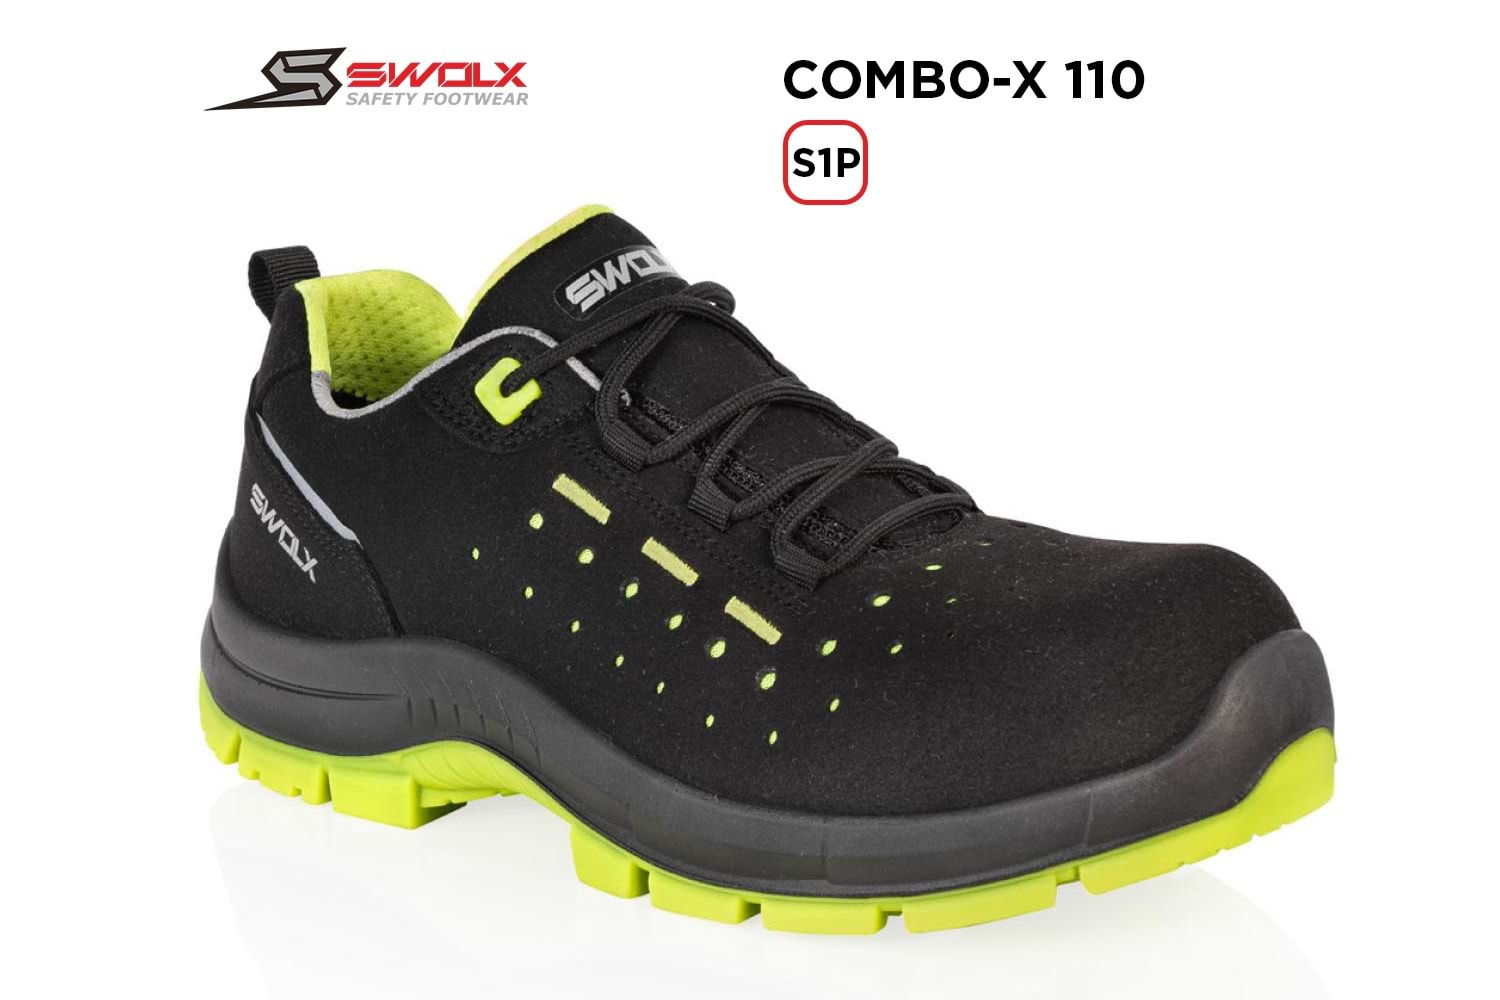 Swolx İş Ayakkabısı - Combo-X 110 S1P - 43